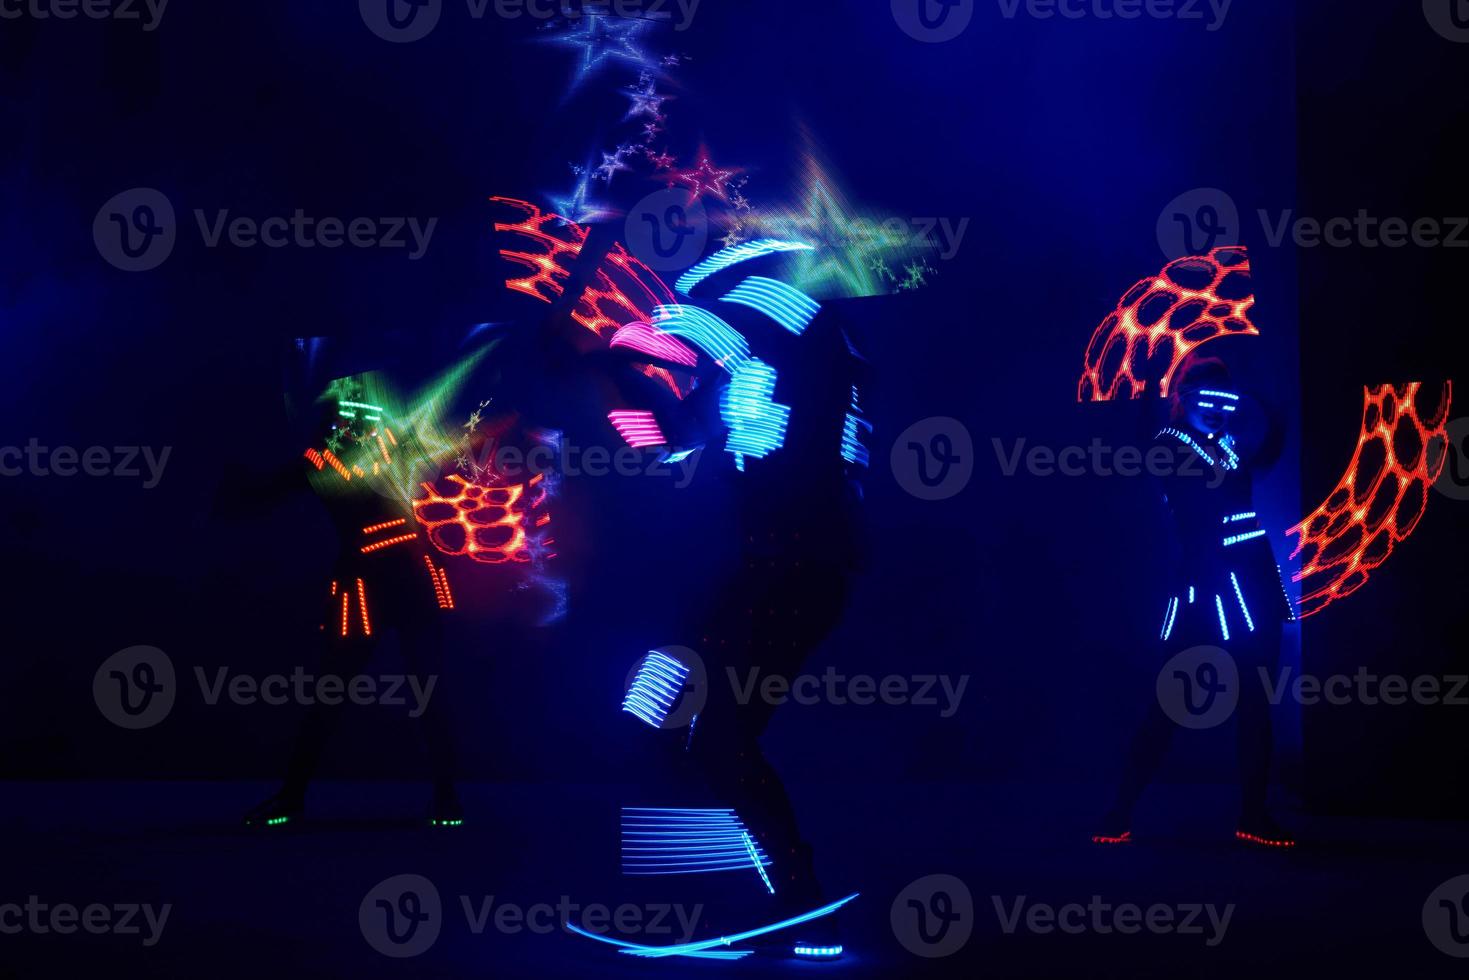 spettacolo di laser show, ballerini in abiti a led con lampada a led, spettacolo di night club molto bello, festa foto